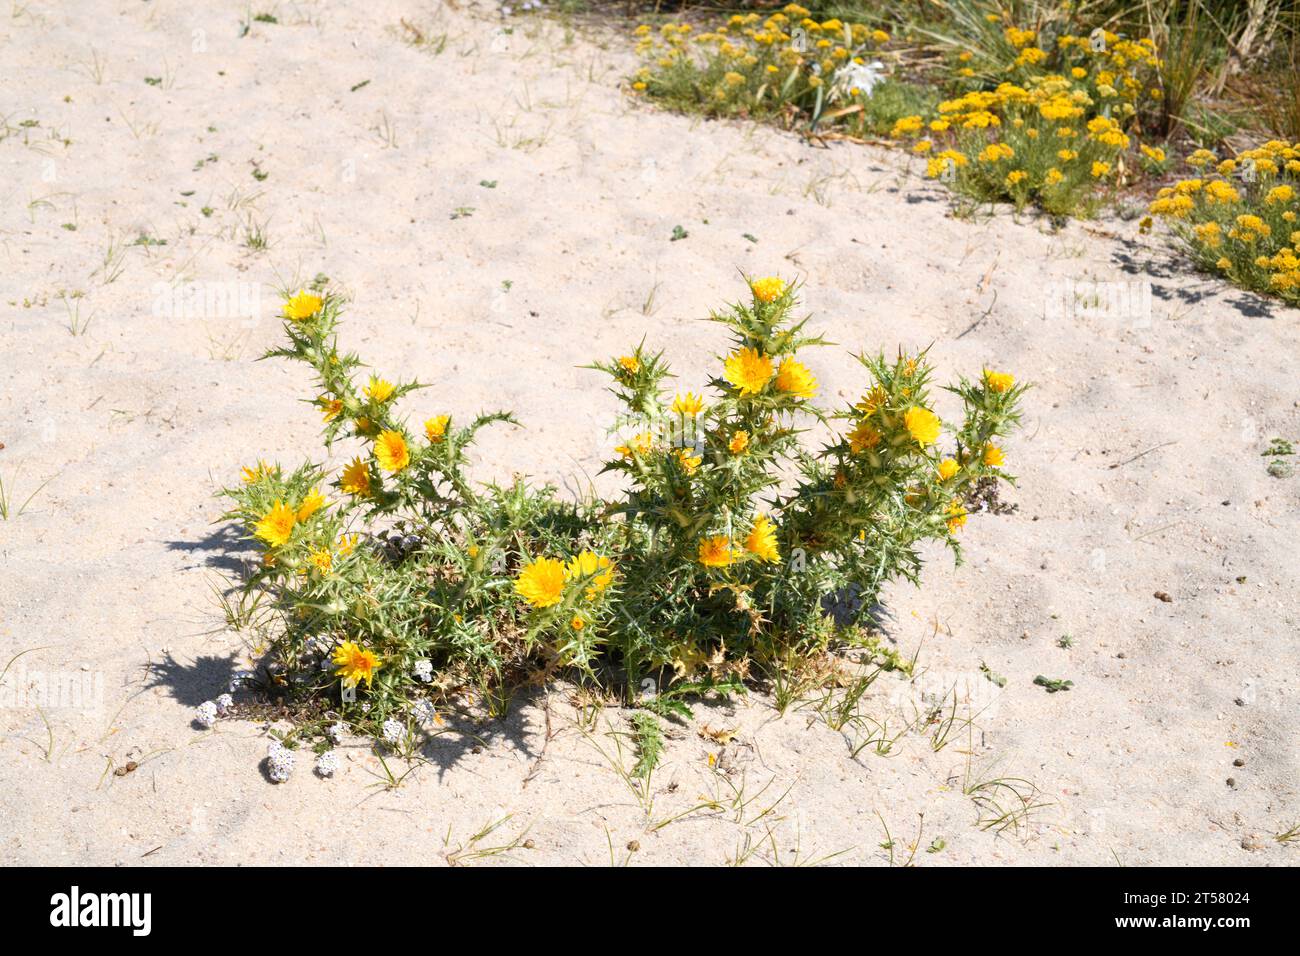 Die spanische Austerndistel (Scolymus hispanicus) ist eine in Südeuropa und Nordwestafrika heimische, biennale oder mehrjährige Pflanze. Dieses Foto Stockfoto